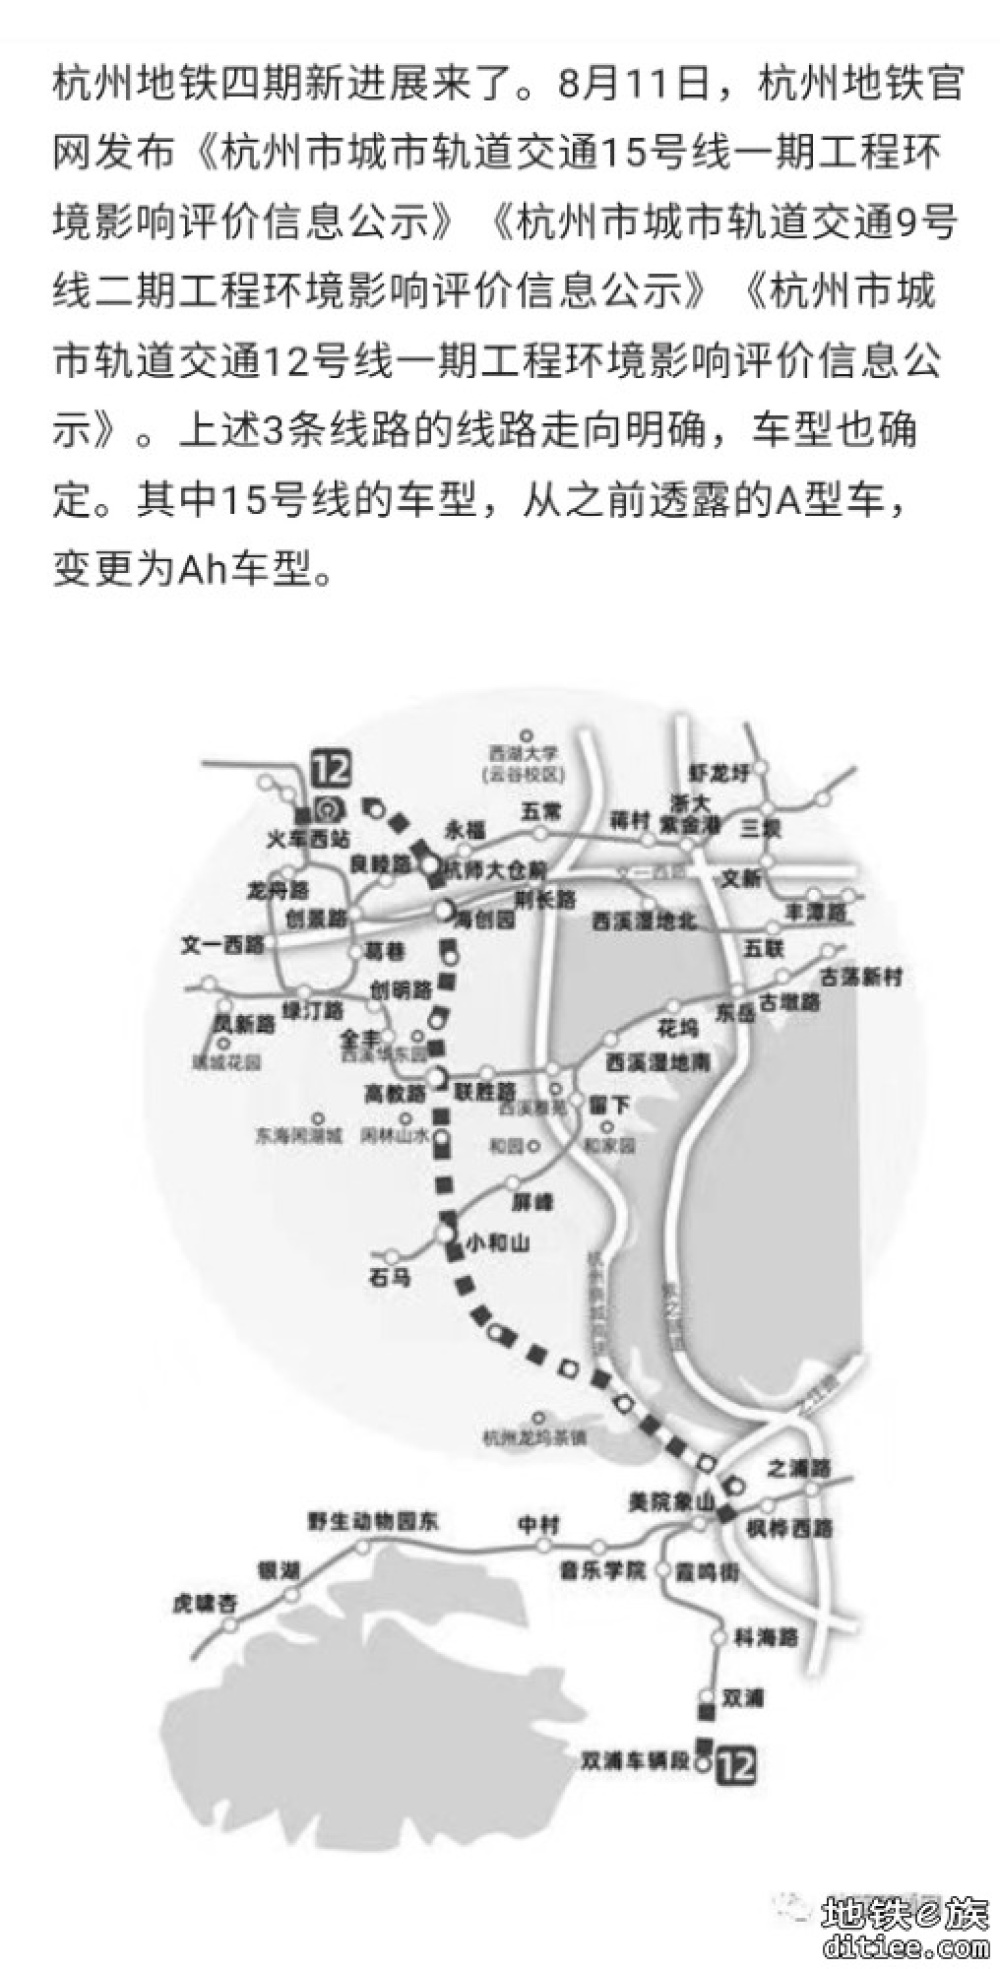 杭州地铁四期新进展来了